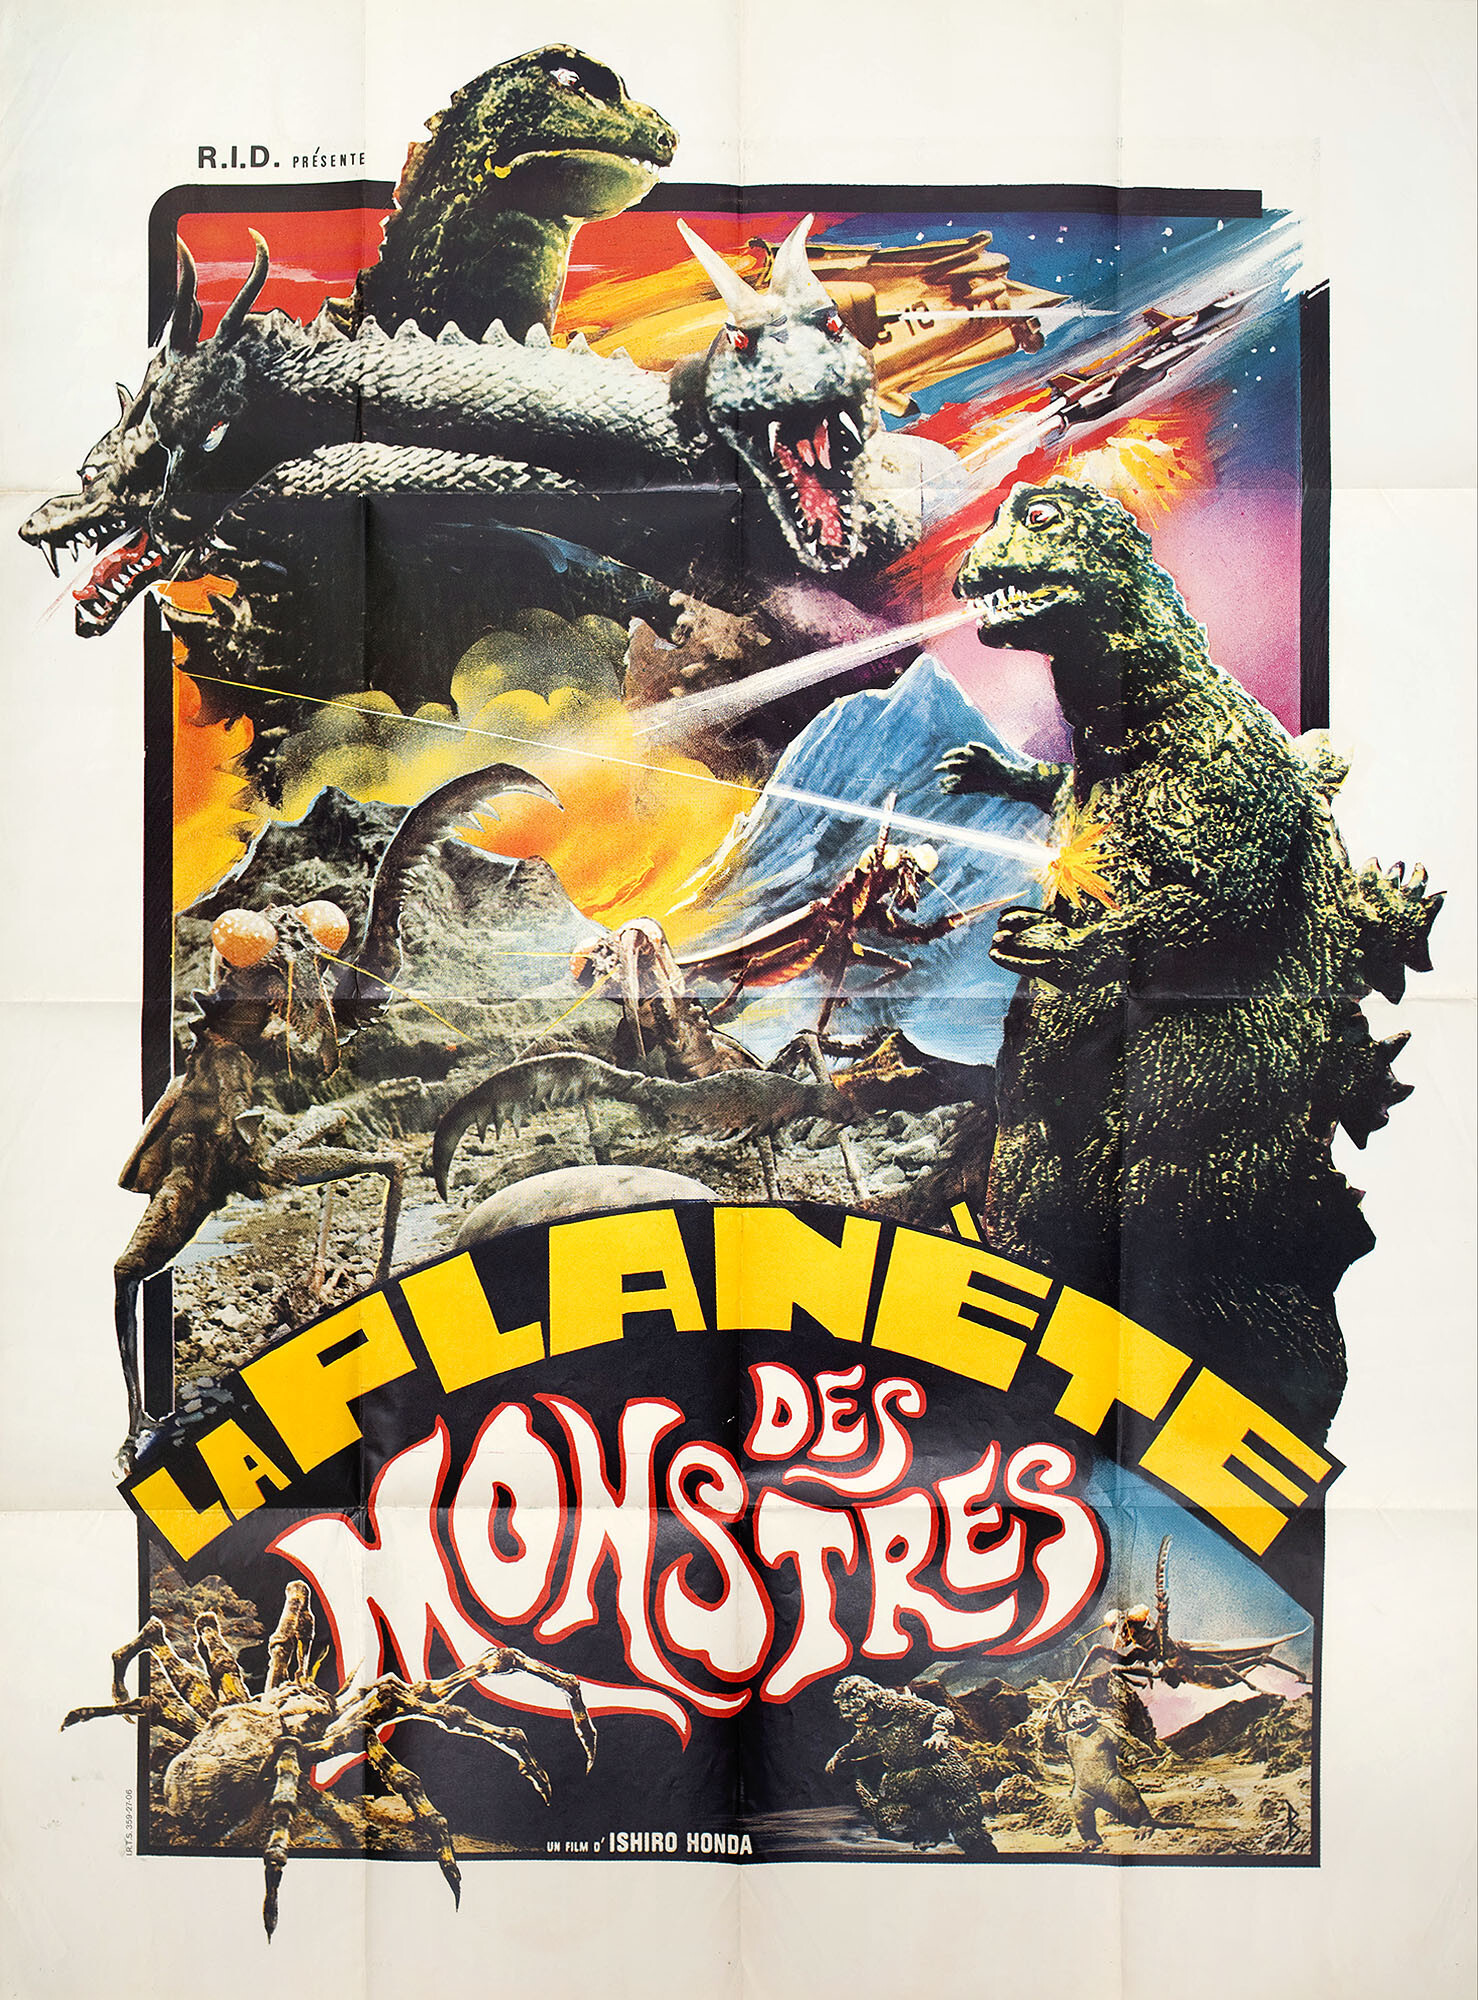 Годзилла: Парад монстров (Destroy All Monsters, 1968), режиссёр Исиро Хонда, французский постер к фильму (монстры, 1969 год)